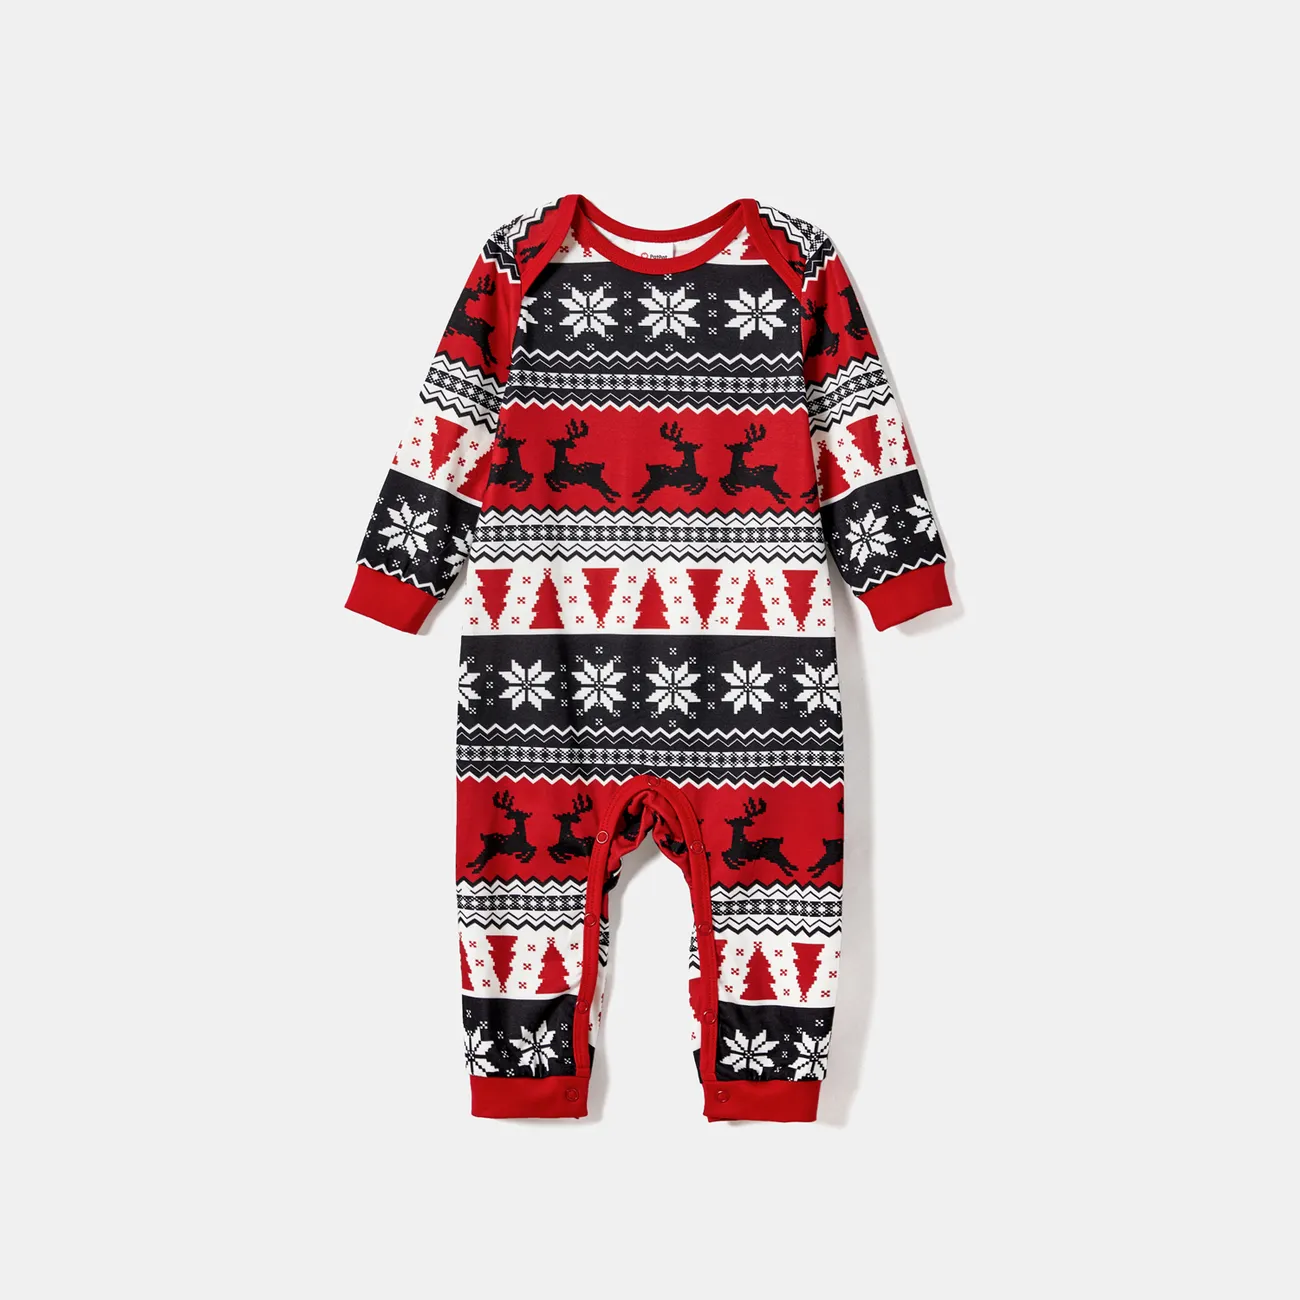 Christmas Letter & Bear Print Raglan-sleeve top and Pants Family Matching Pajamas Sets (Flame Resistant)  big image 1